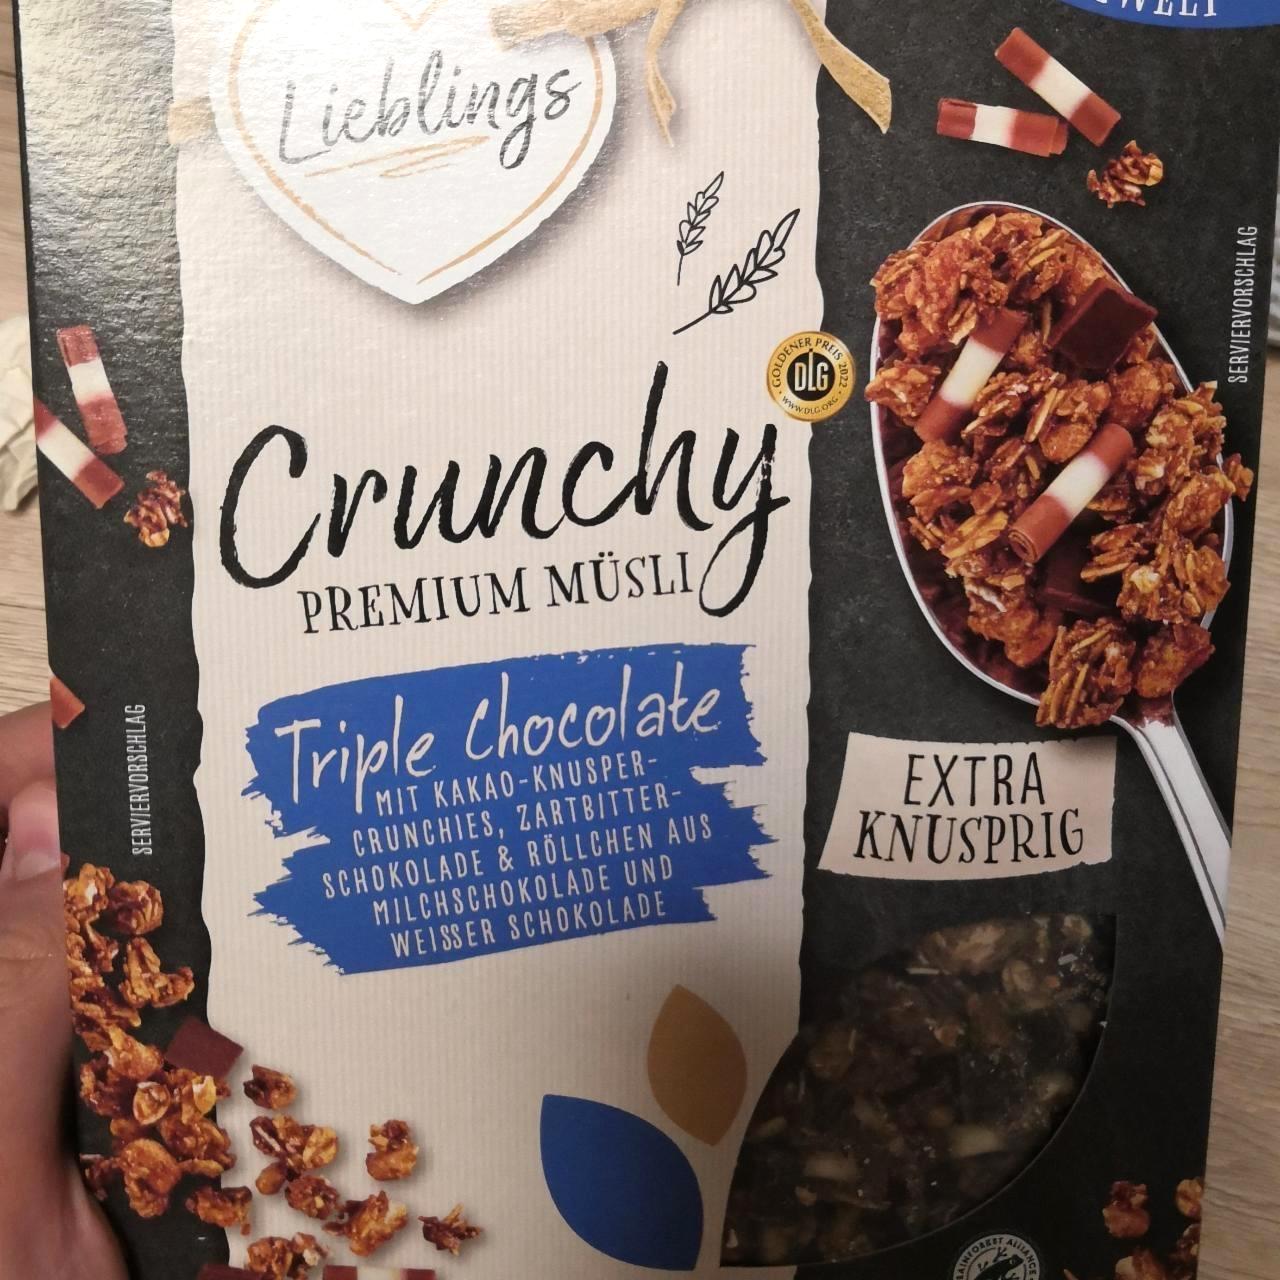 Képek - Crunchy premium müsli Triple chocolate Lieblings